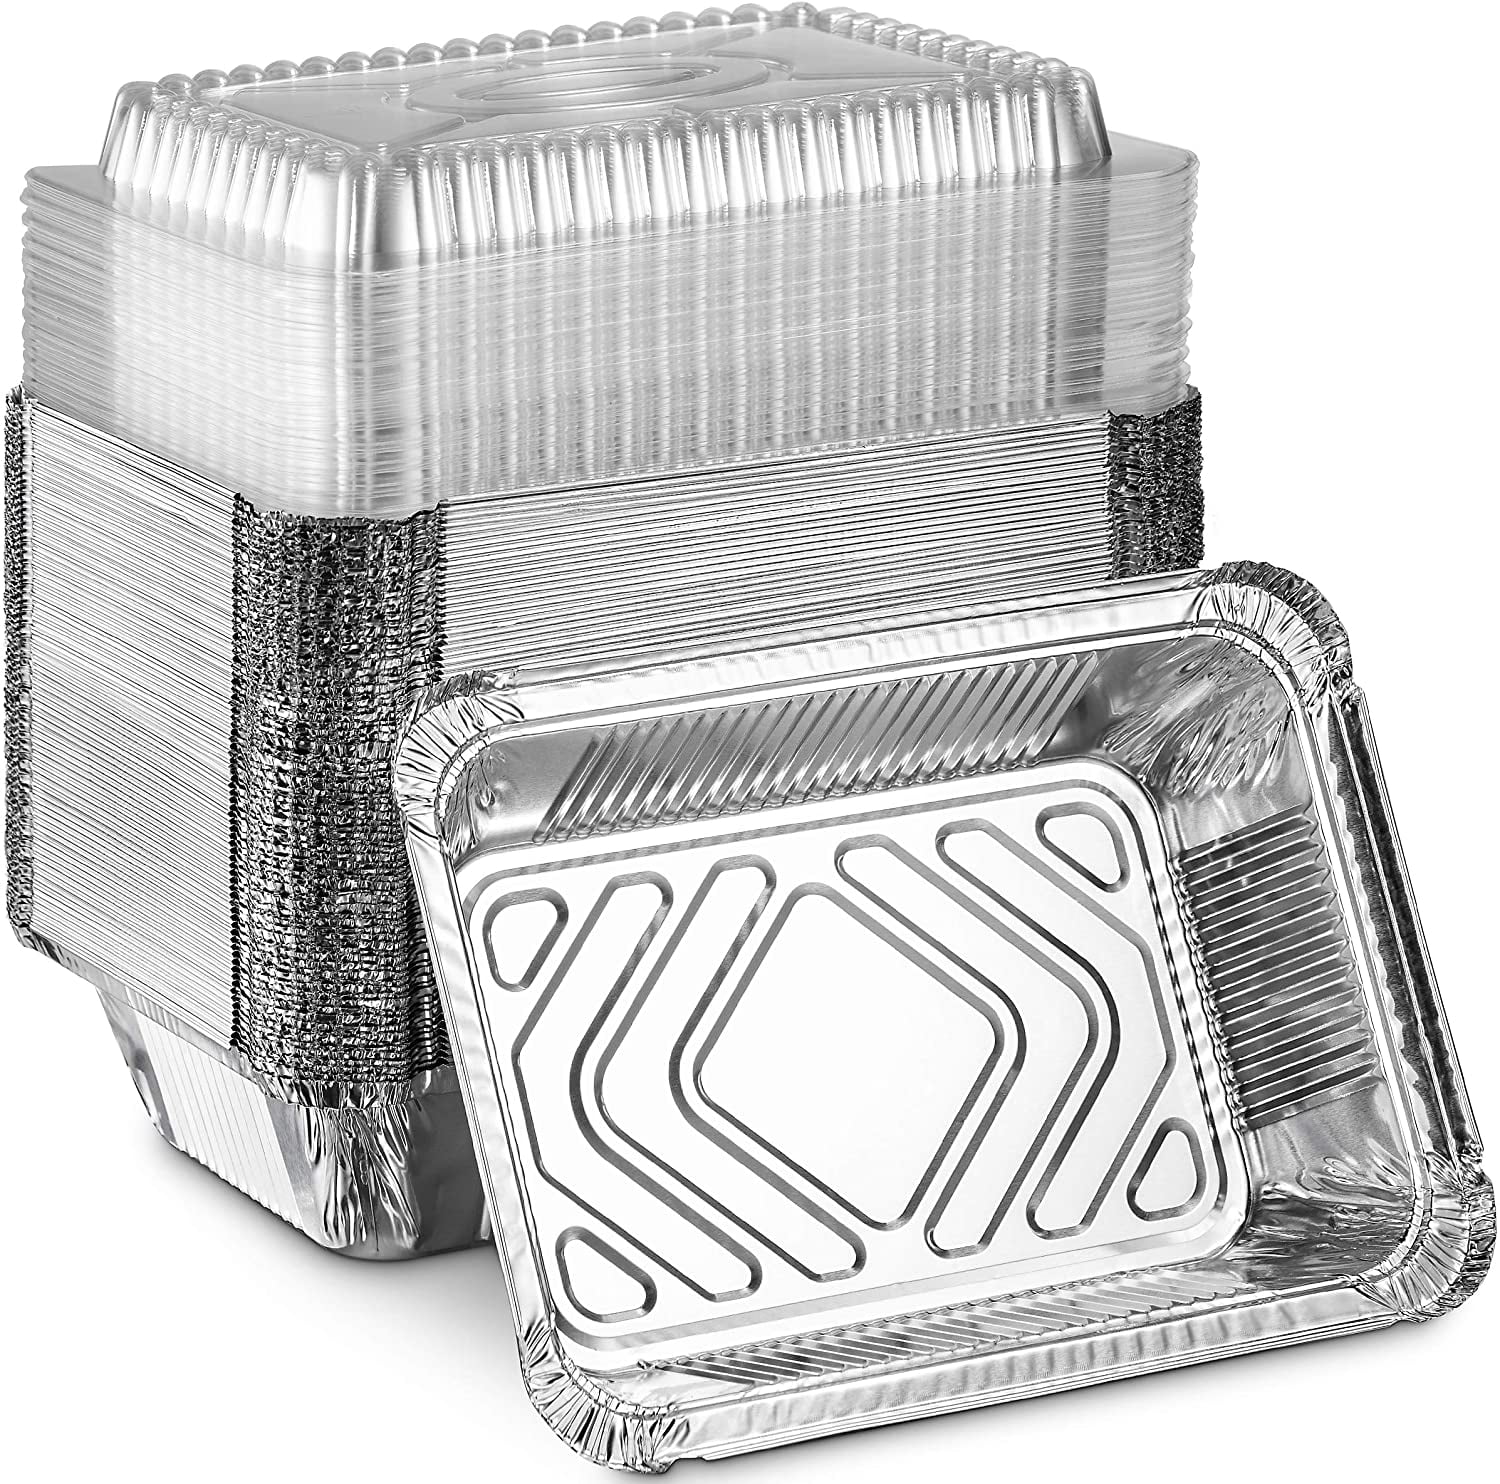  Aluminum Pans with Lids (50-Pack, 8.5×6) 2.25 LB